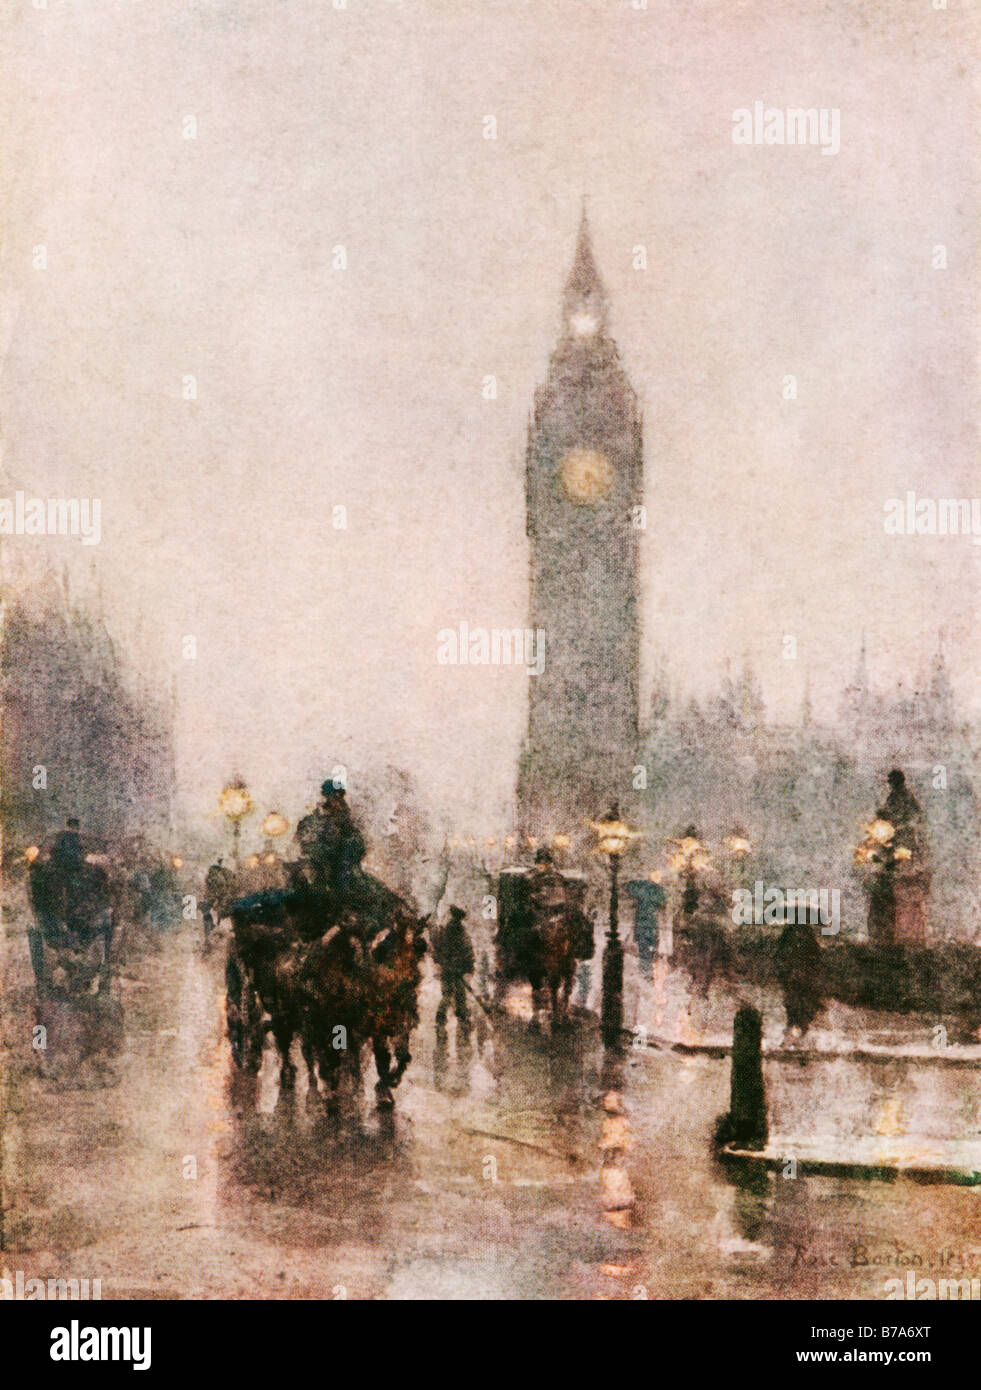 Westminster 1898 Peinture de Rose Barton d'un jour de pluie dans la région de Parliament Square Big Ben menace hors de l'ombre Banque D'Images